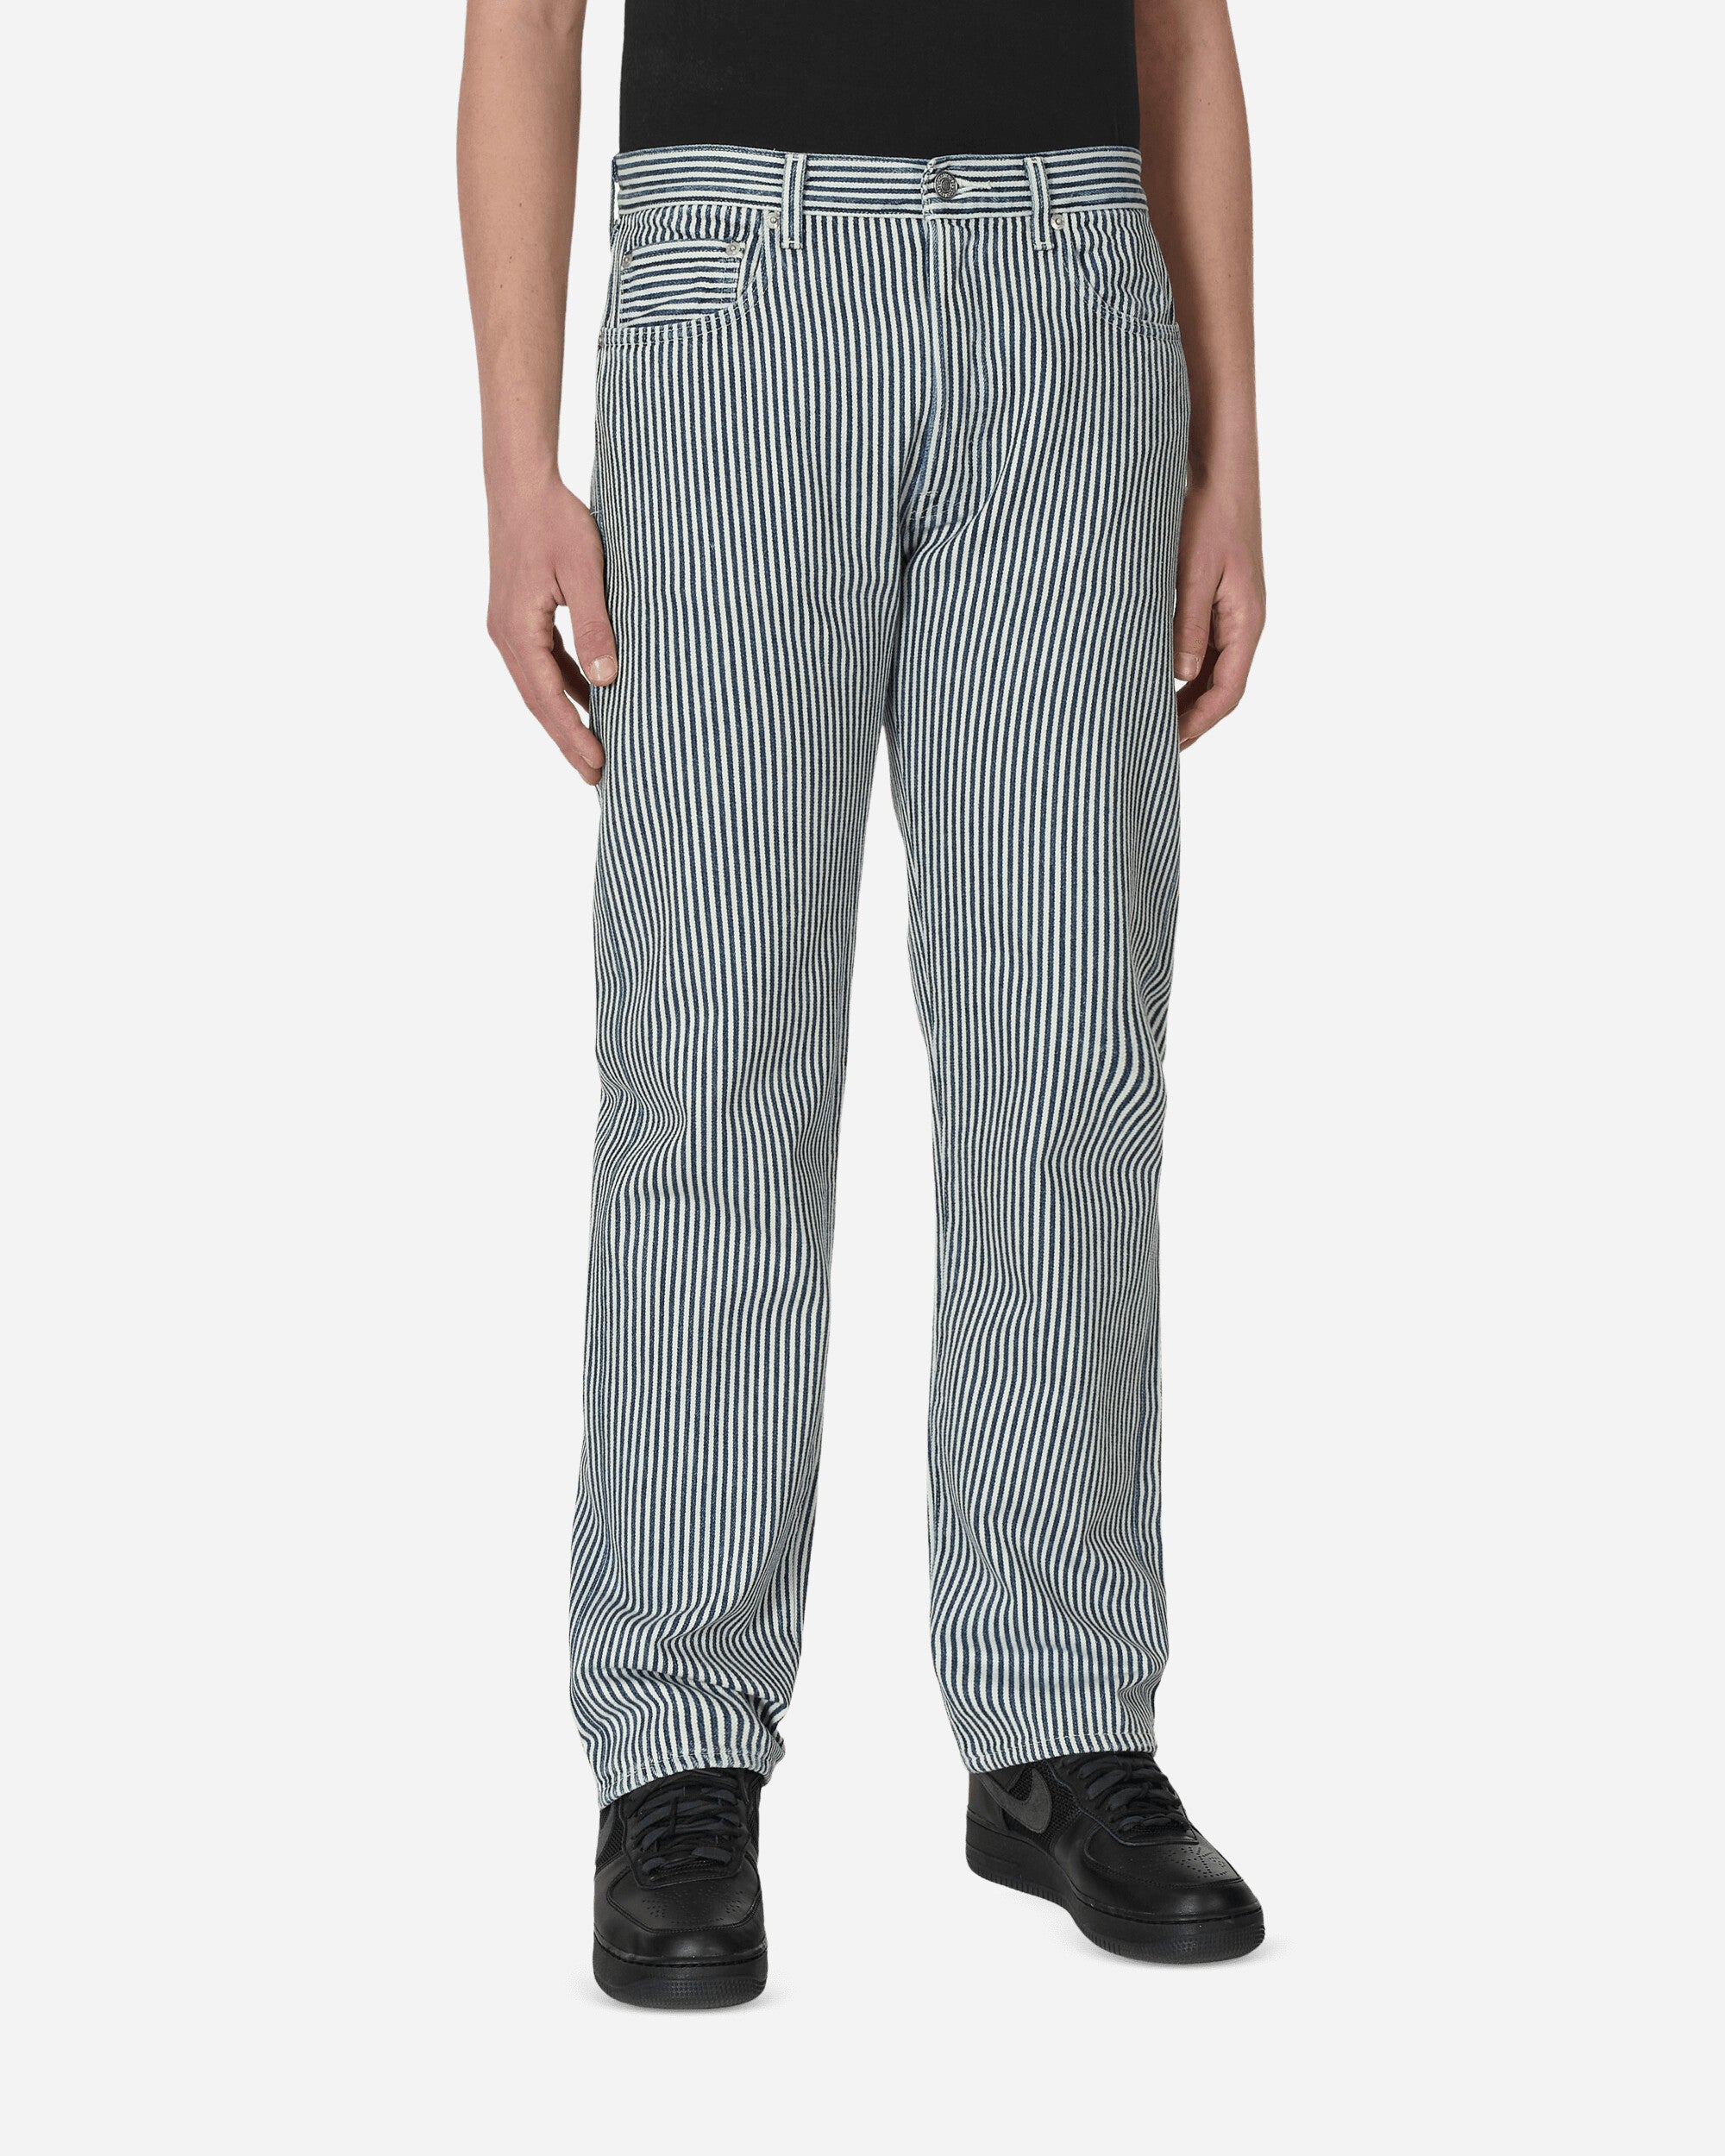 Levis x Nigo Hickory Stripe 501 Jeans Indigo